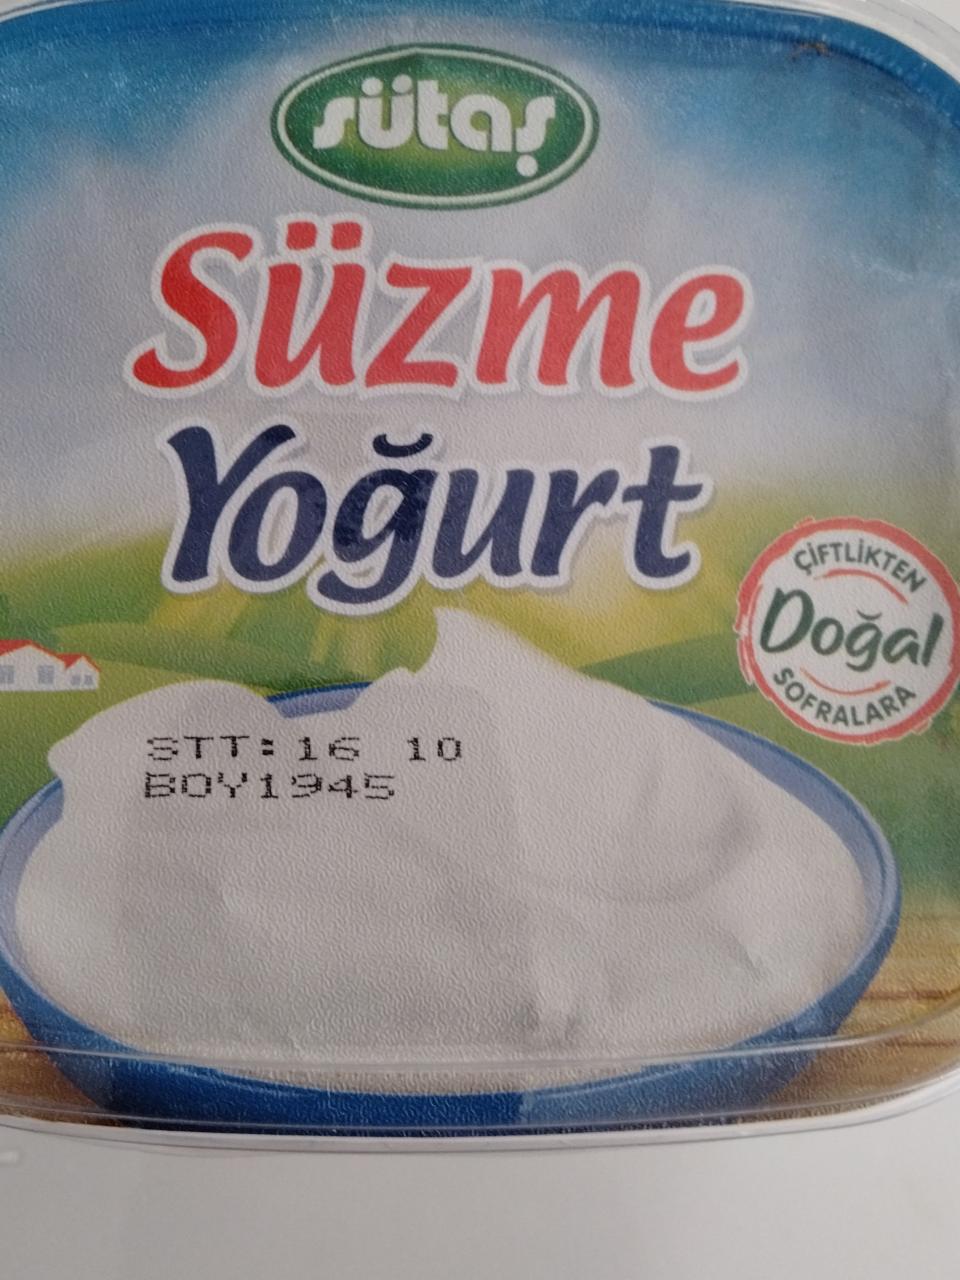 Фото - yoğurt süzme йогурт без доавок Sütaş